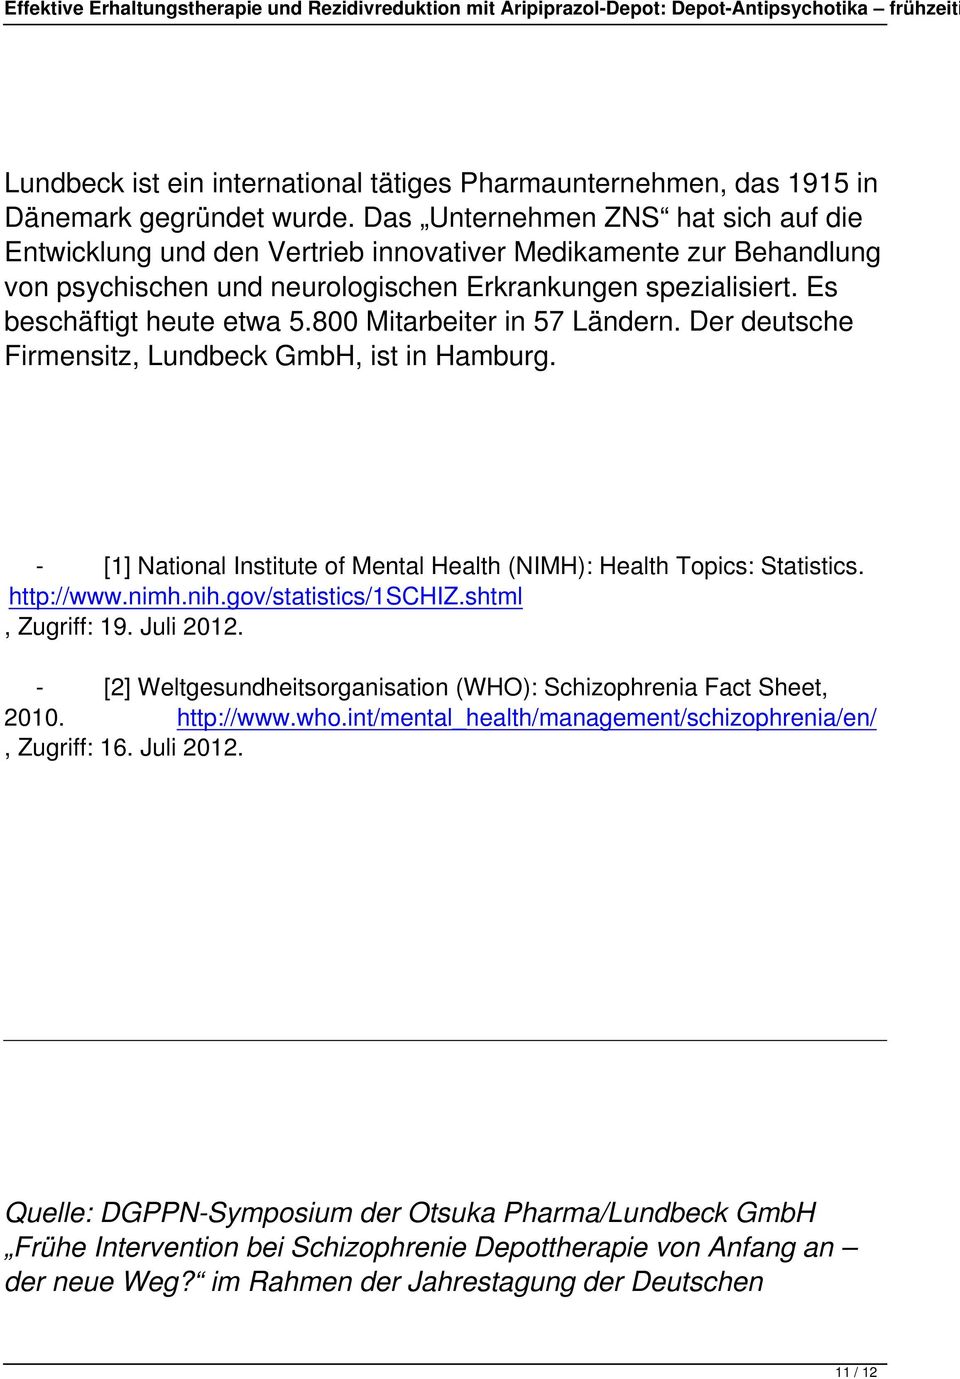 800 Mitarbeiter in 57 Ländern. Der deutsche Firmensitz, Lundbeck GmbH, ist in Hamburg. - [1] National Institute of Mental Health (NIMH): Health Topics: Statistics. http://www.nimh.nih.